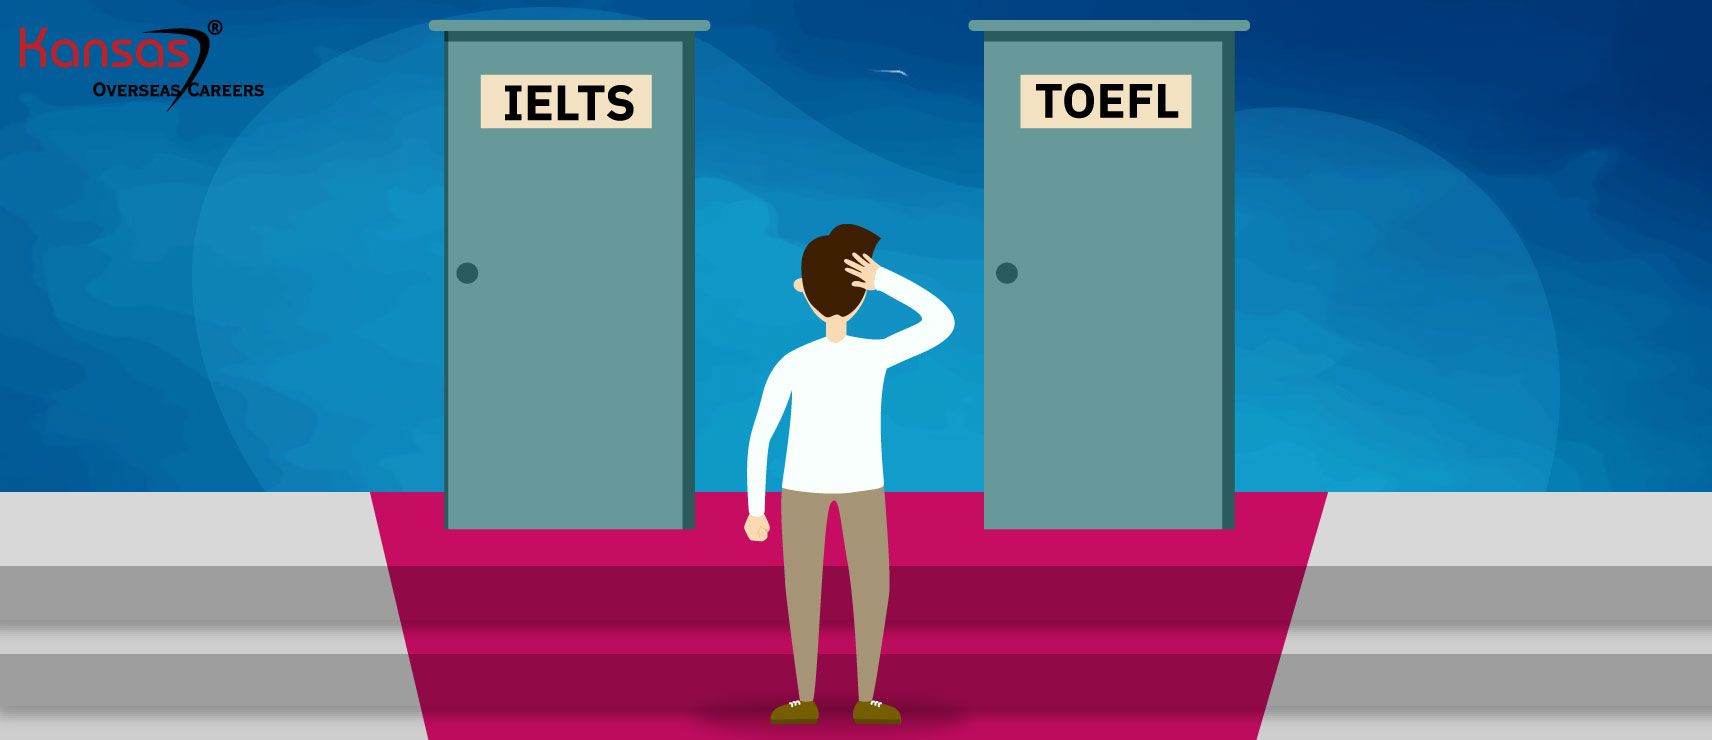 TOEFL Vs IELTS